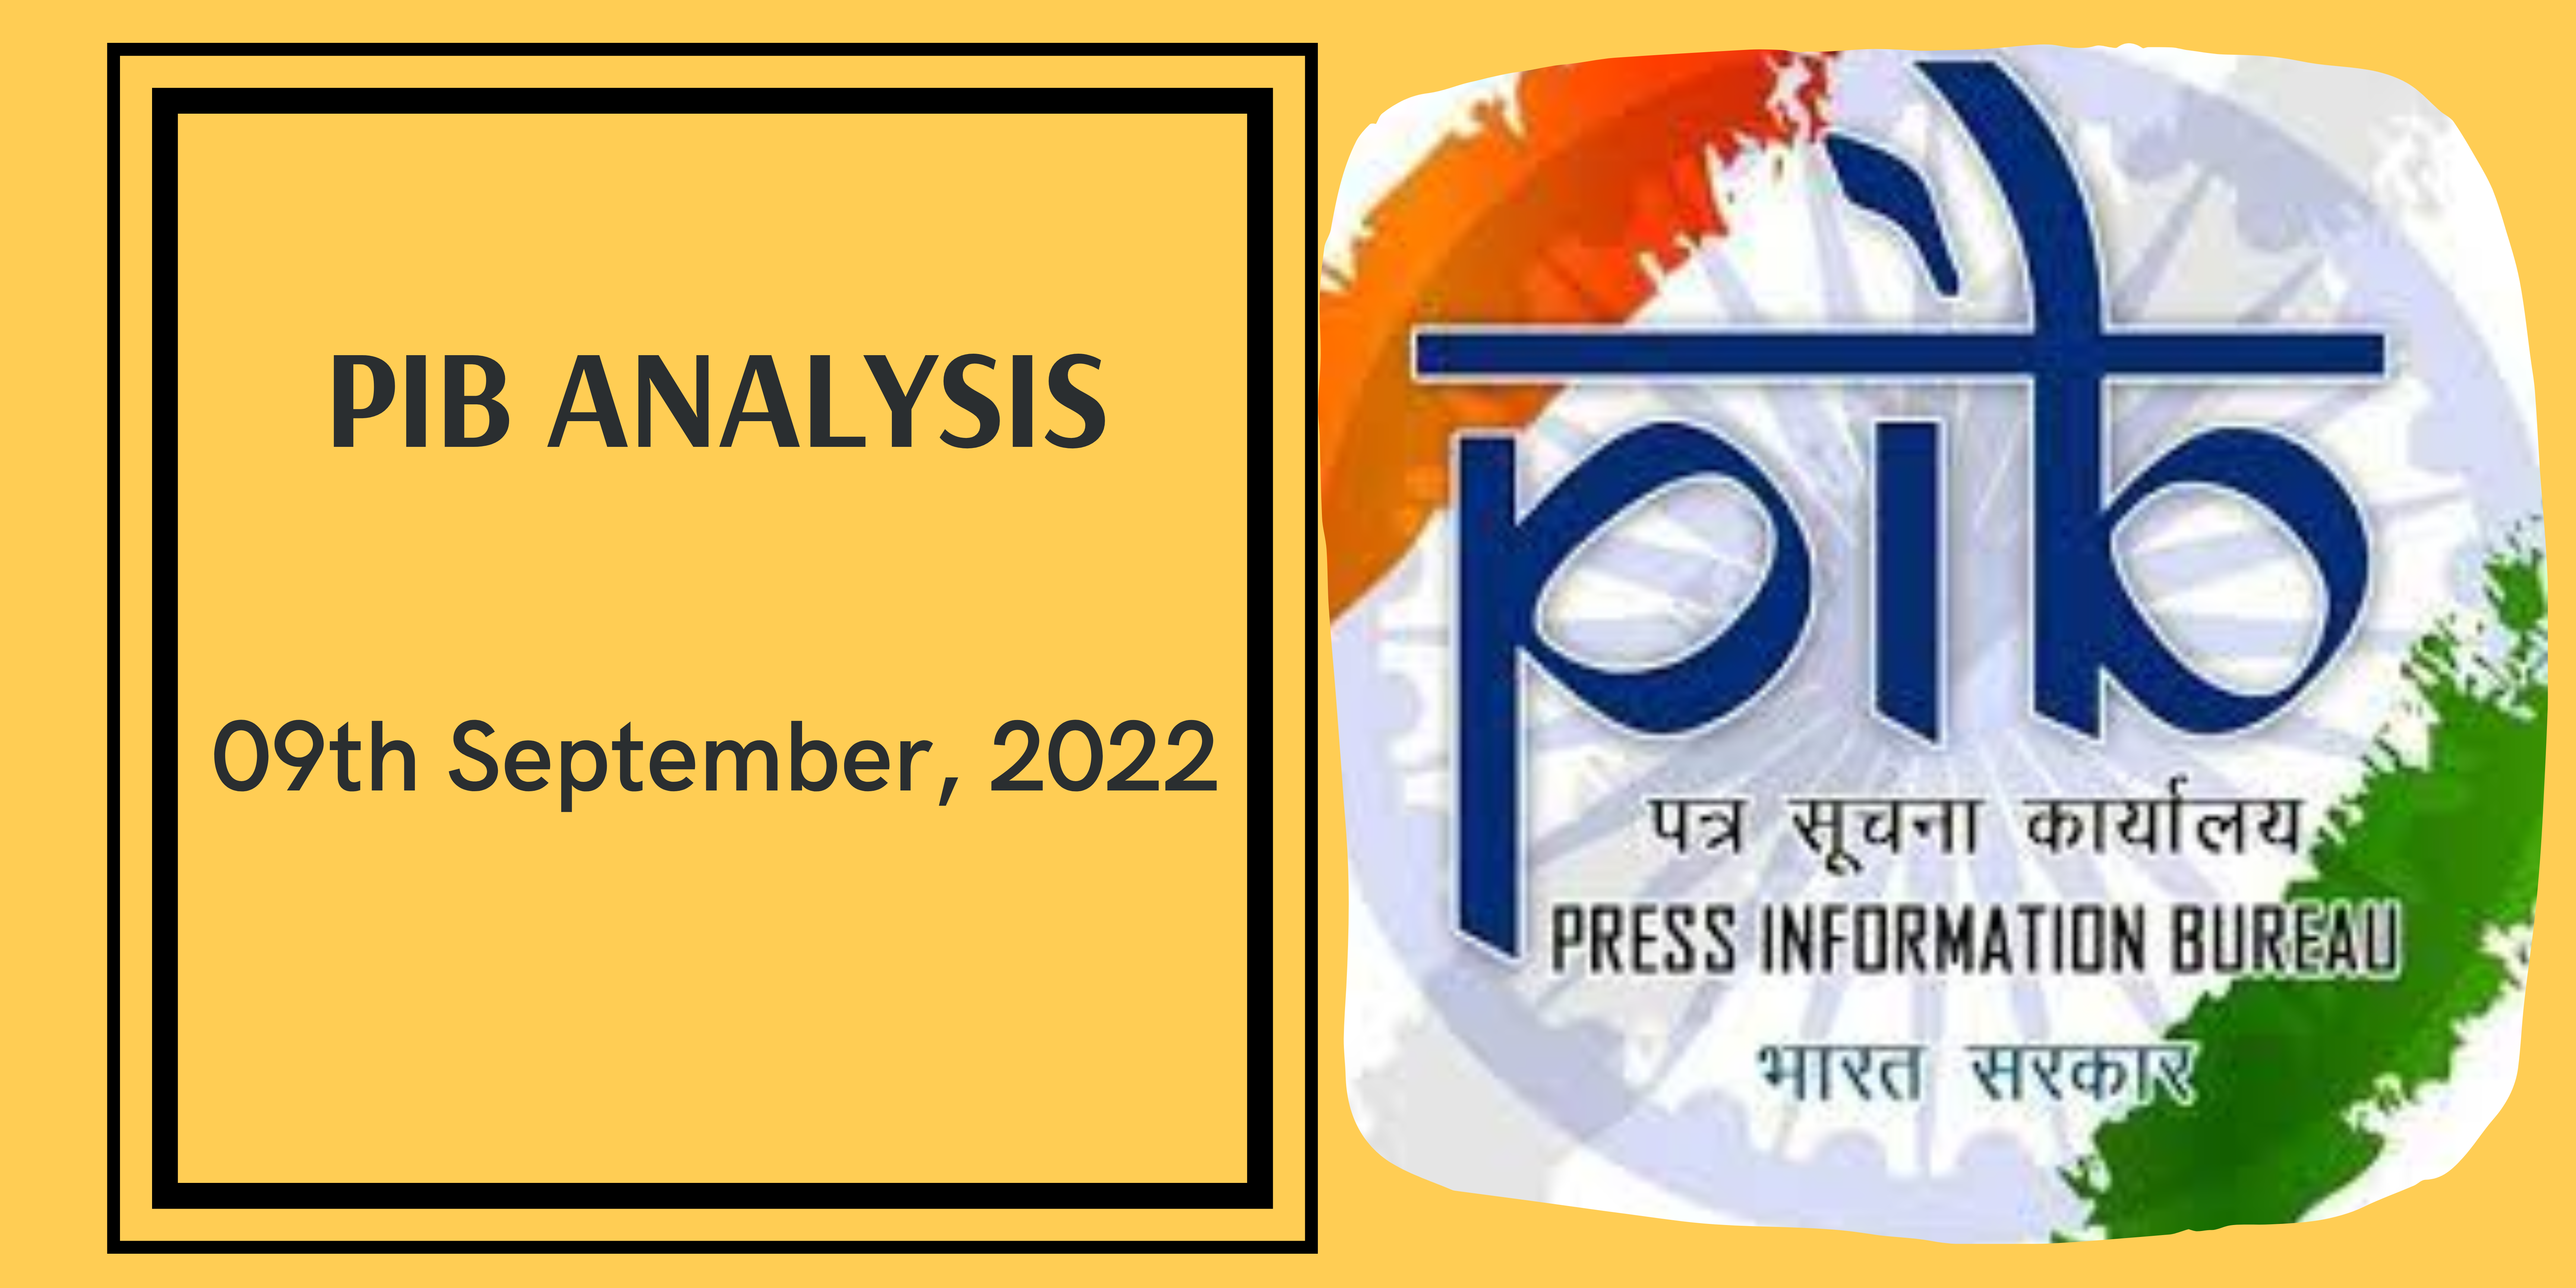 PIB Analysis - 09th September, 2022